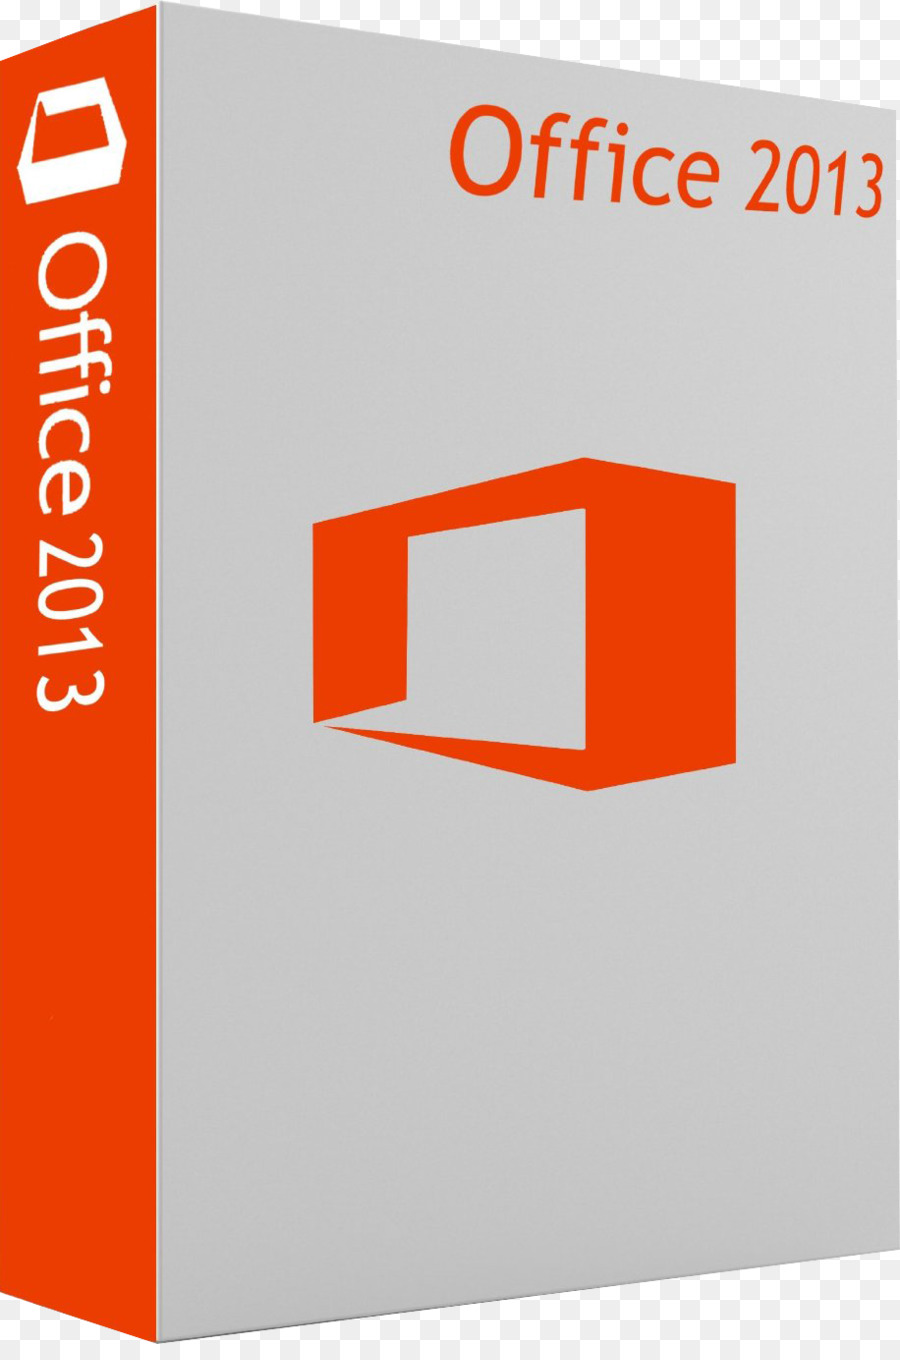 Microsoft Office 2013 chiave del Prodotto di Microsoft Office 2016 - Microsoft